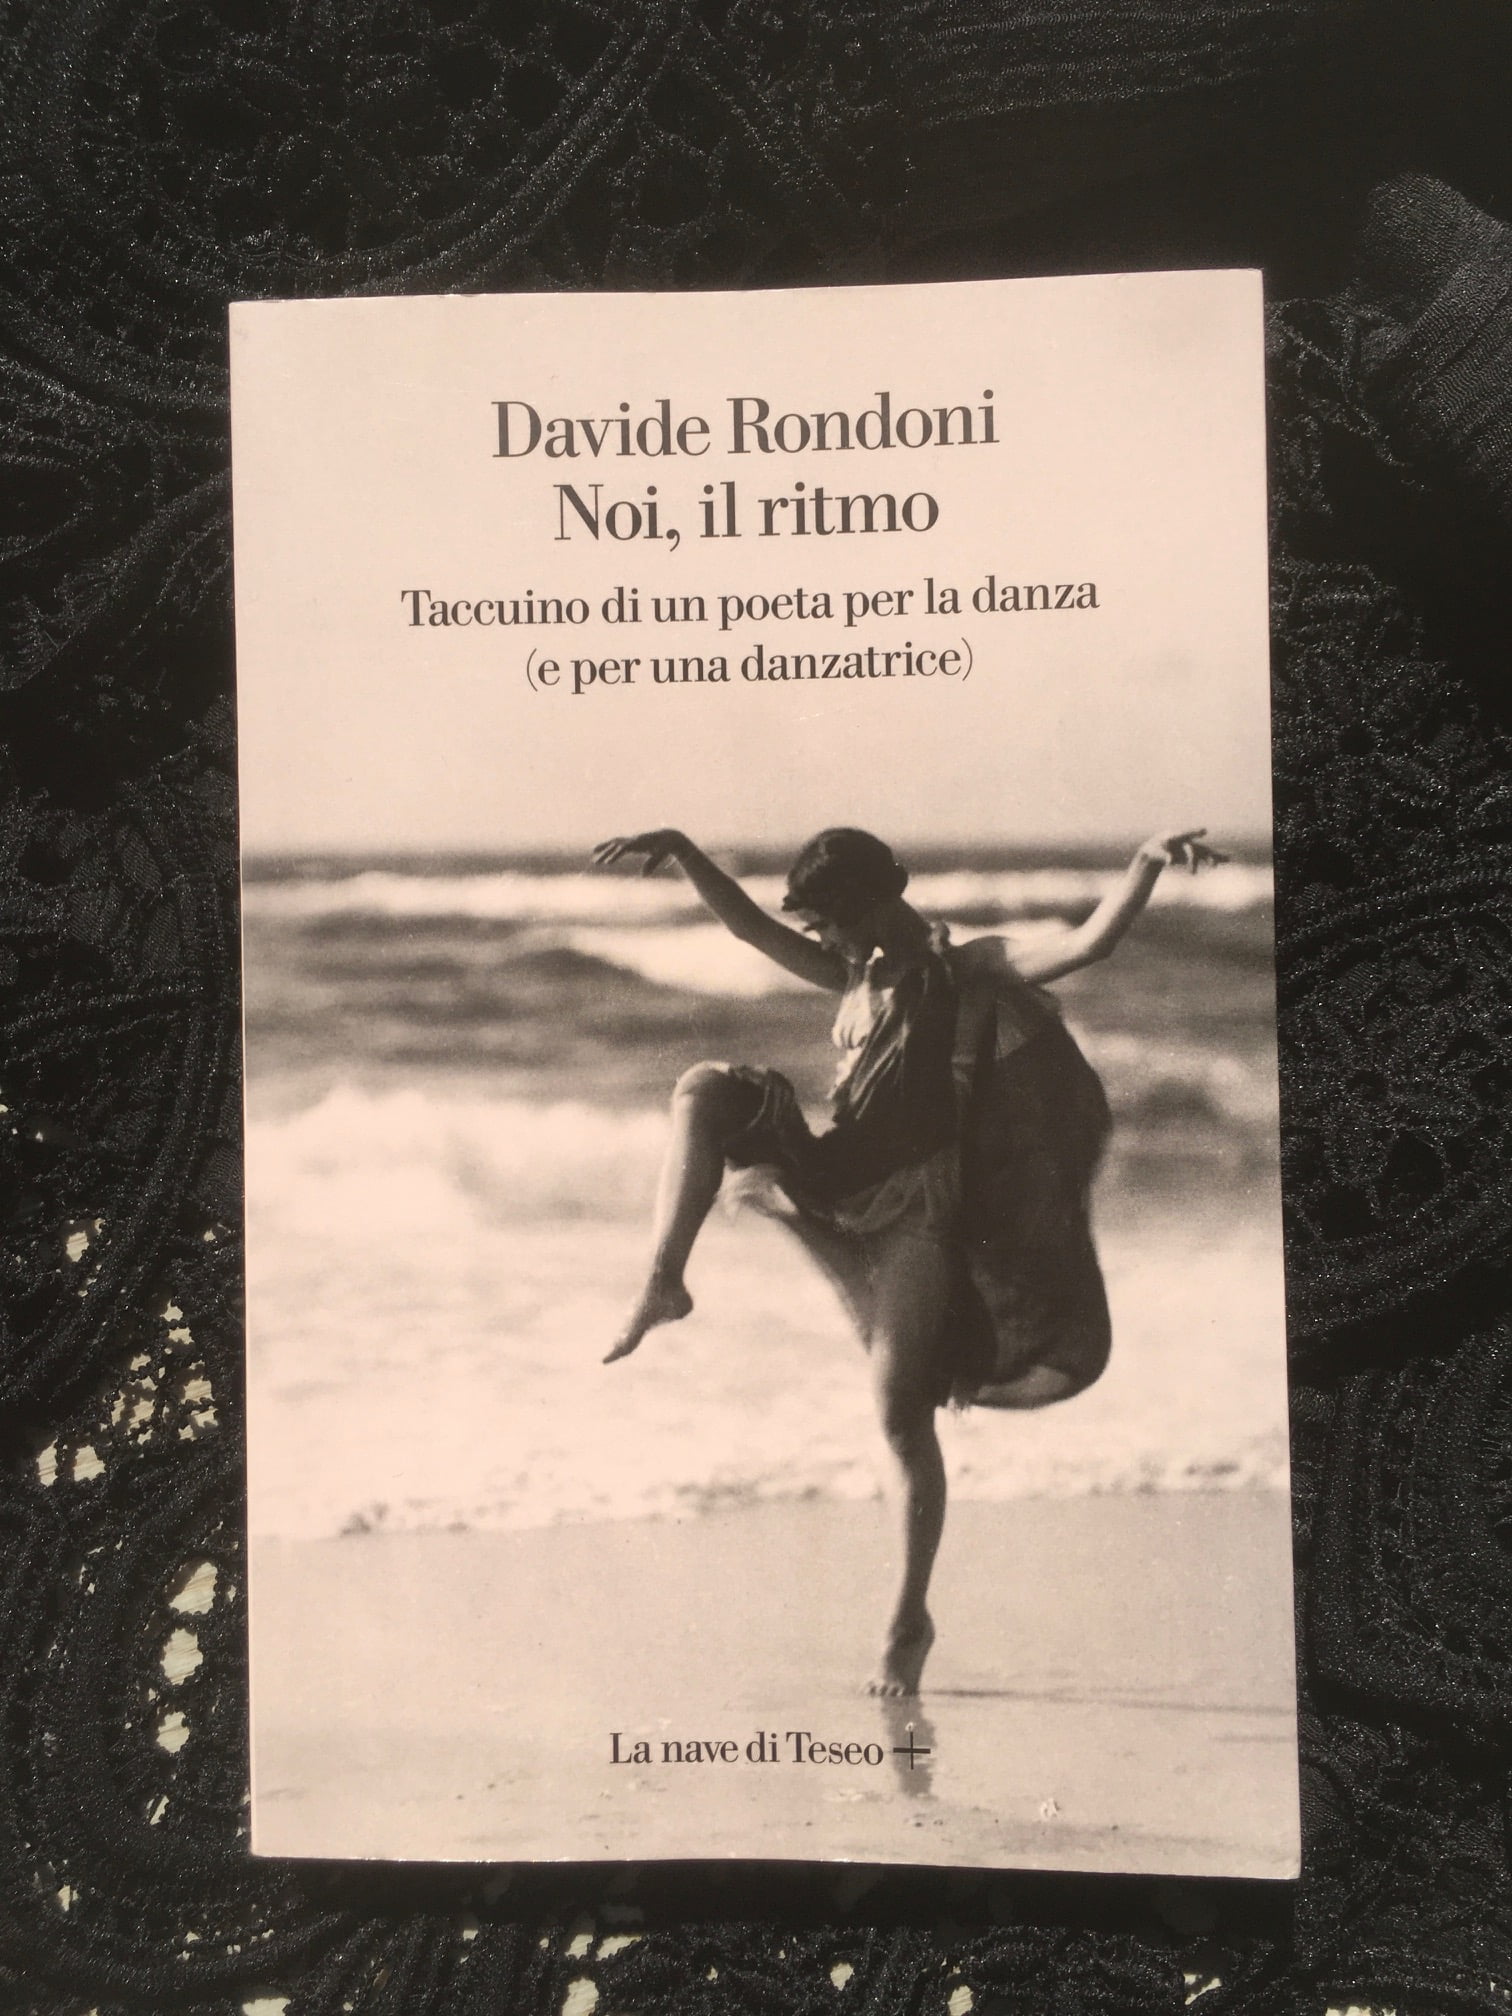 “Noi, il ritmo” – Davide Rondoni